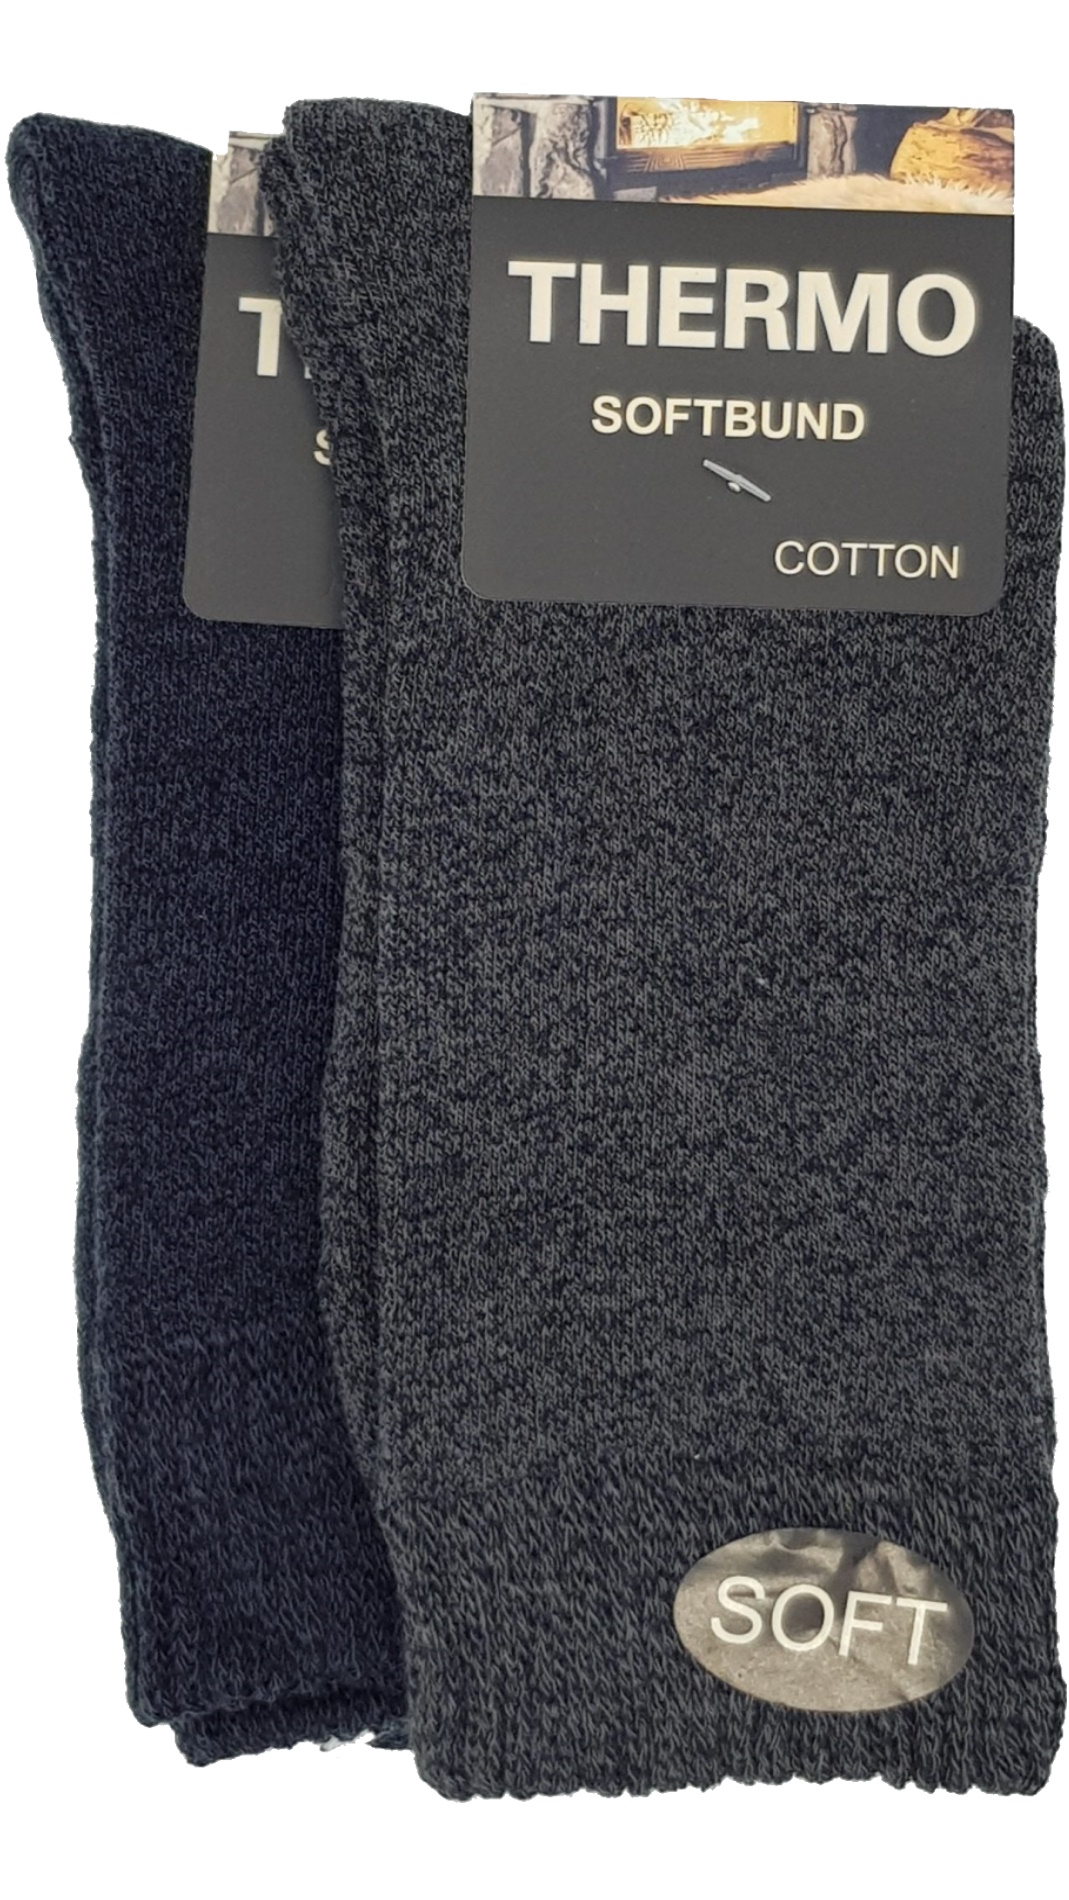 Thermo Soft Socken Softbund 2 – (23402,38413) Paar